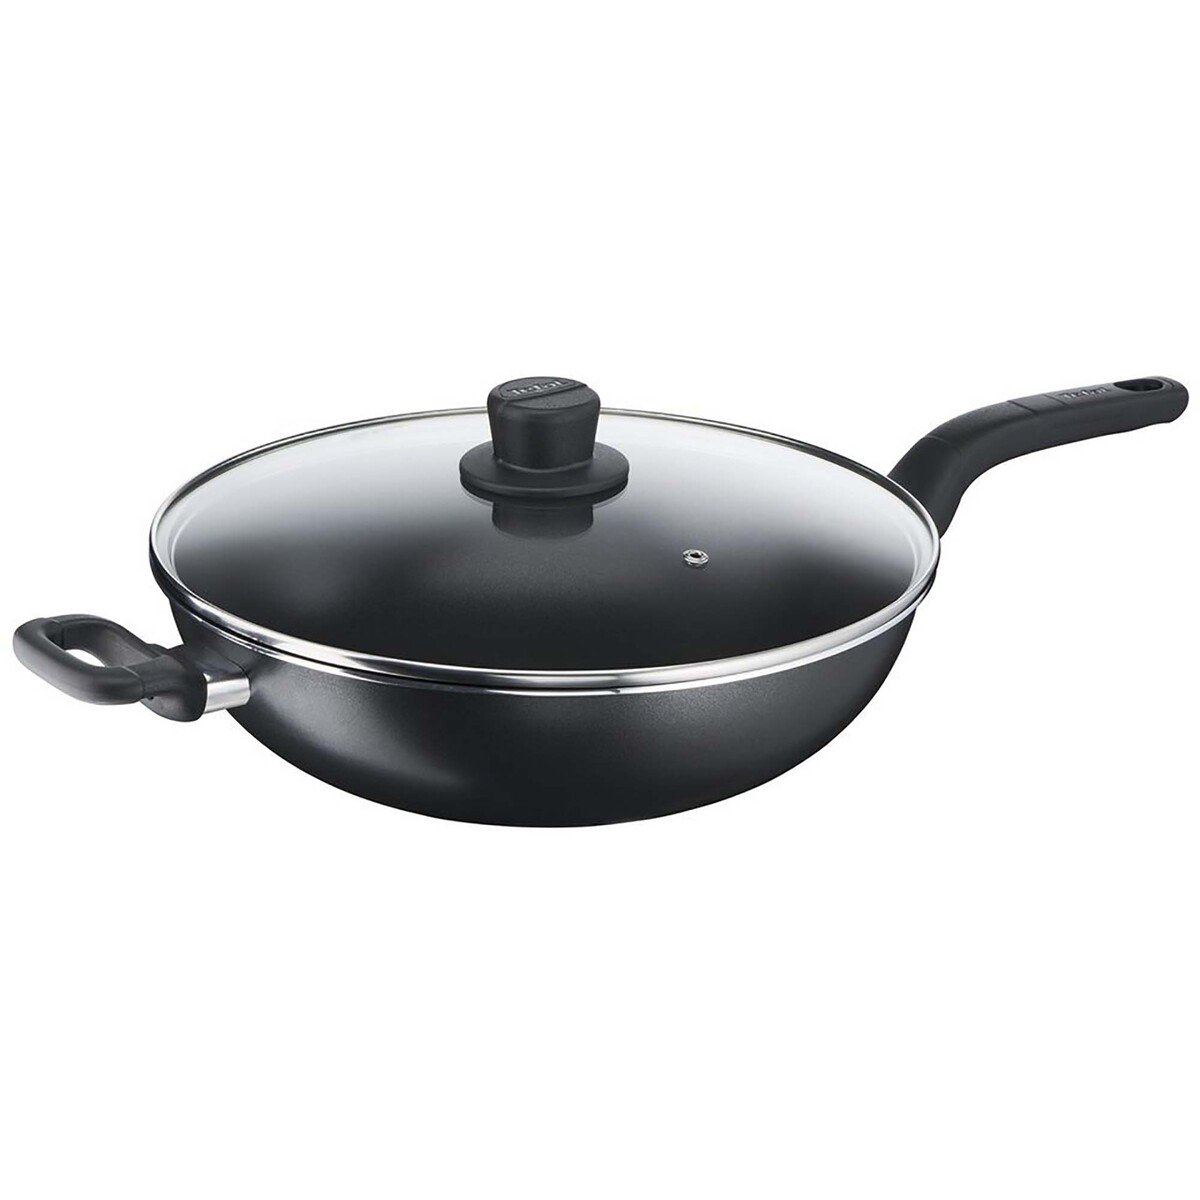 Tefal Cook Easy Wok Pan with Lid, Black, 32 cm, B5039495